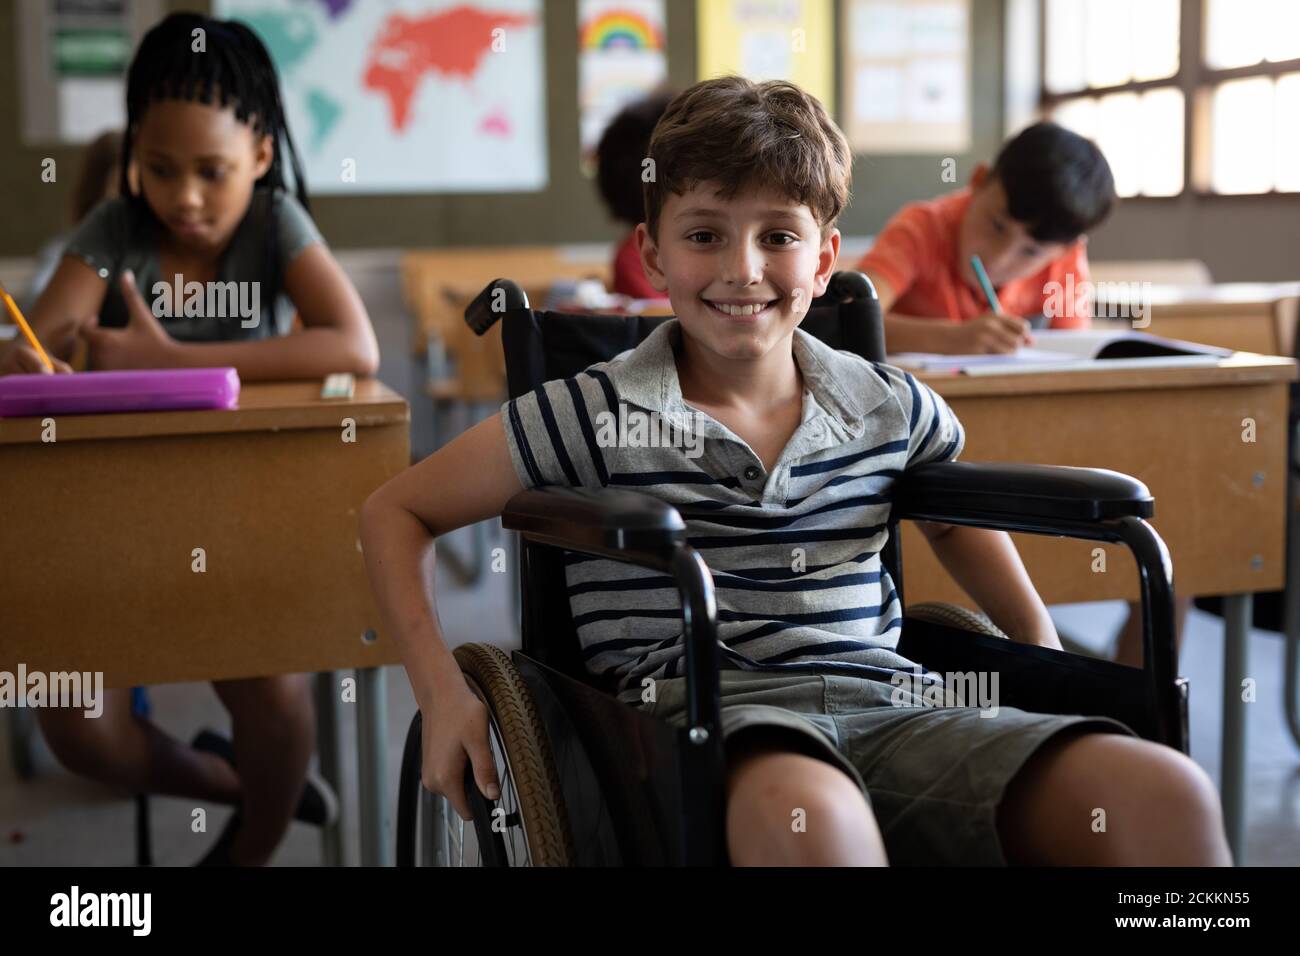 Porträt des behinderten Jungen lächelnd, während er in seinem Rollstuhl sitzt In der Schule Stockfoto